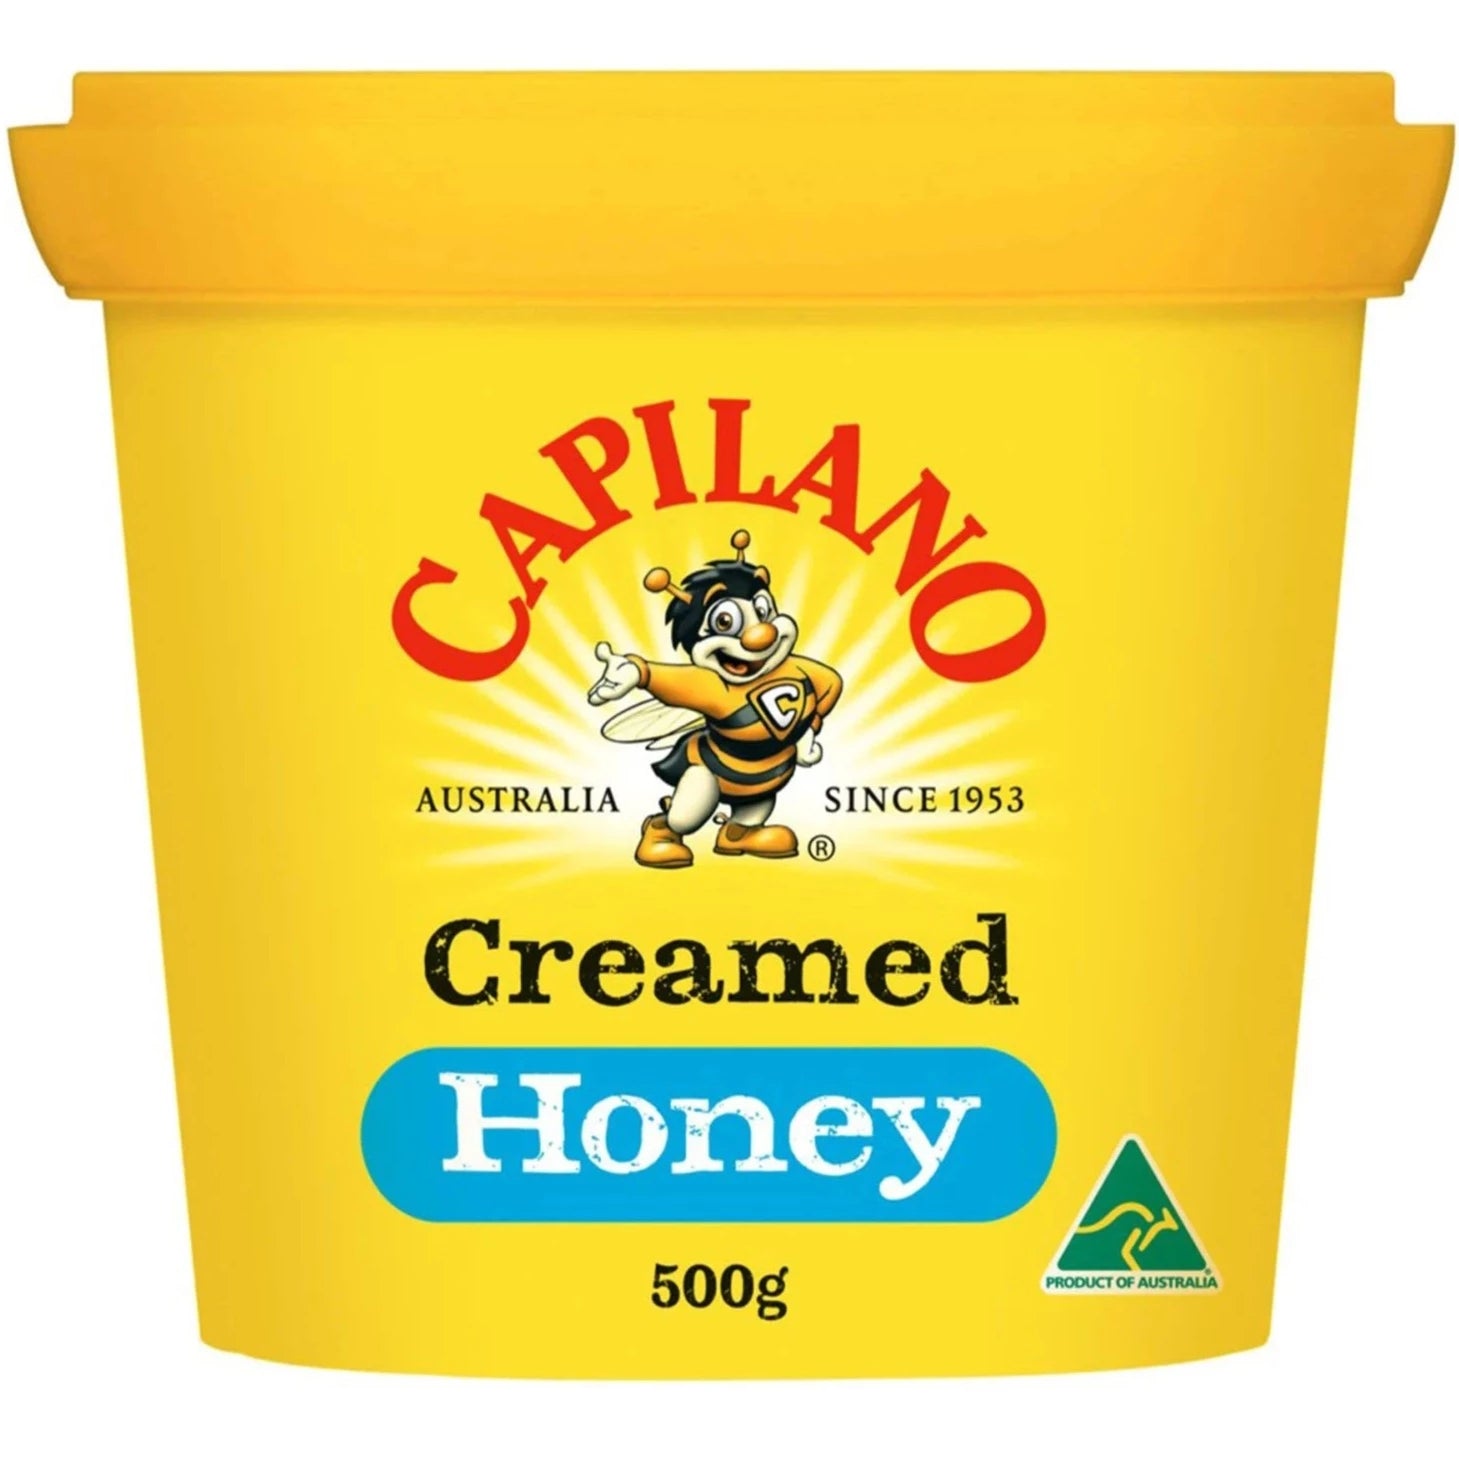 Capilano Creamed Honey 500g